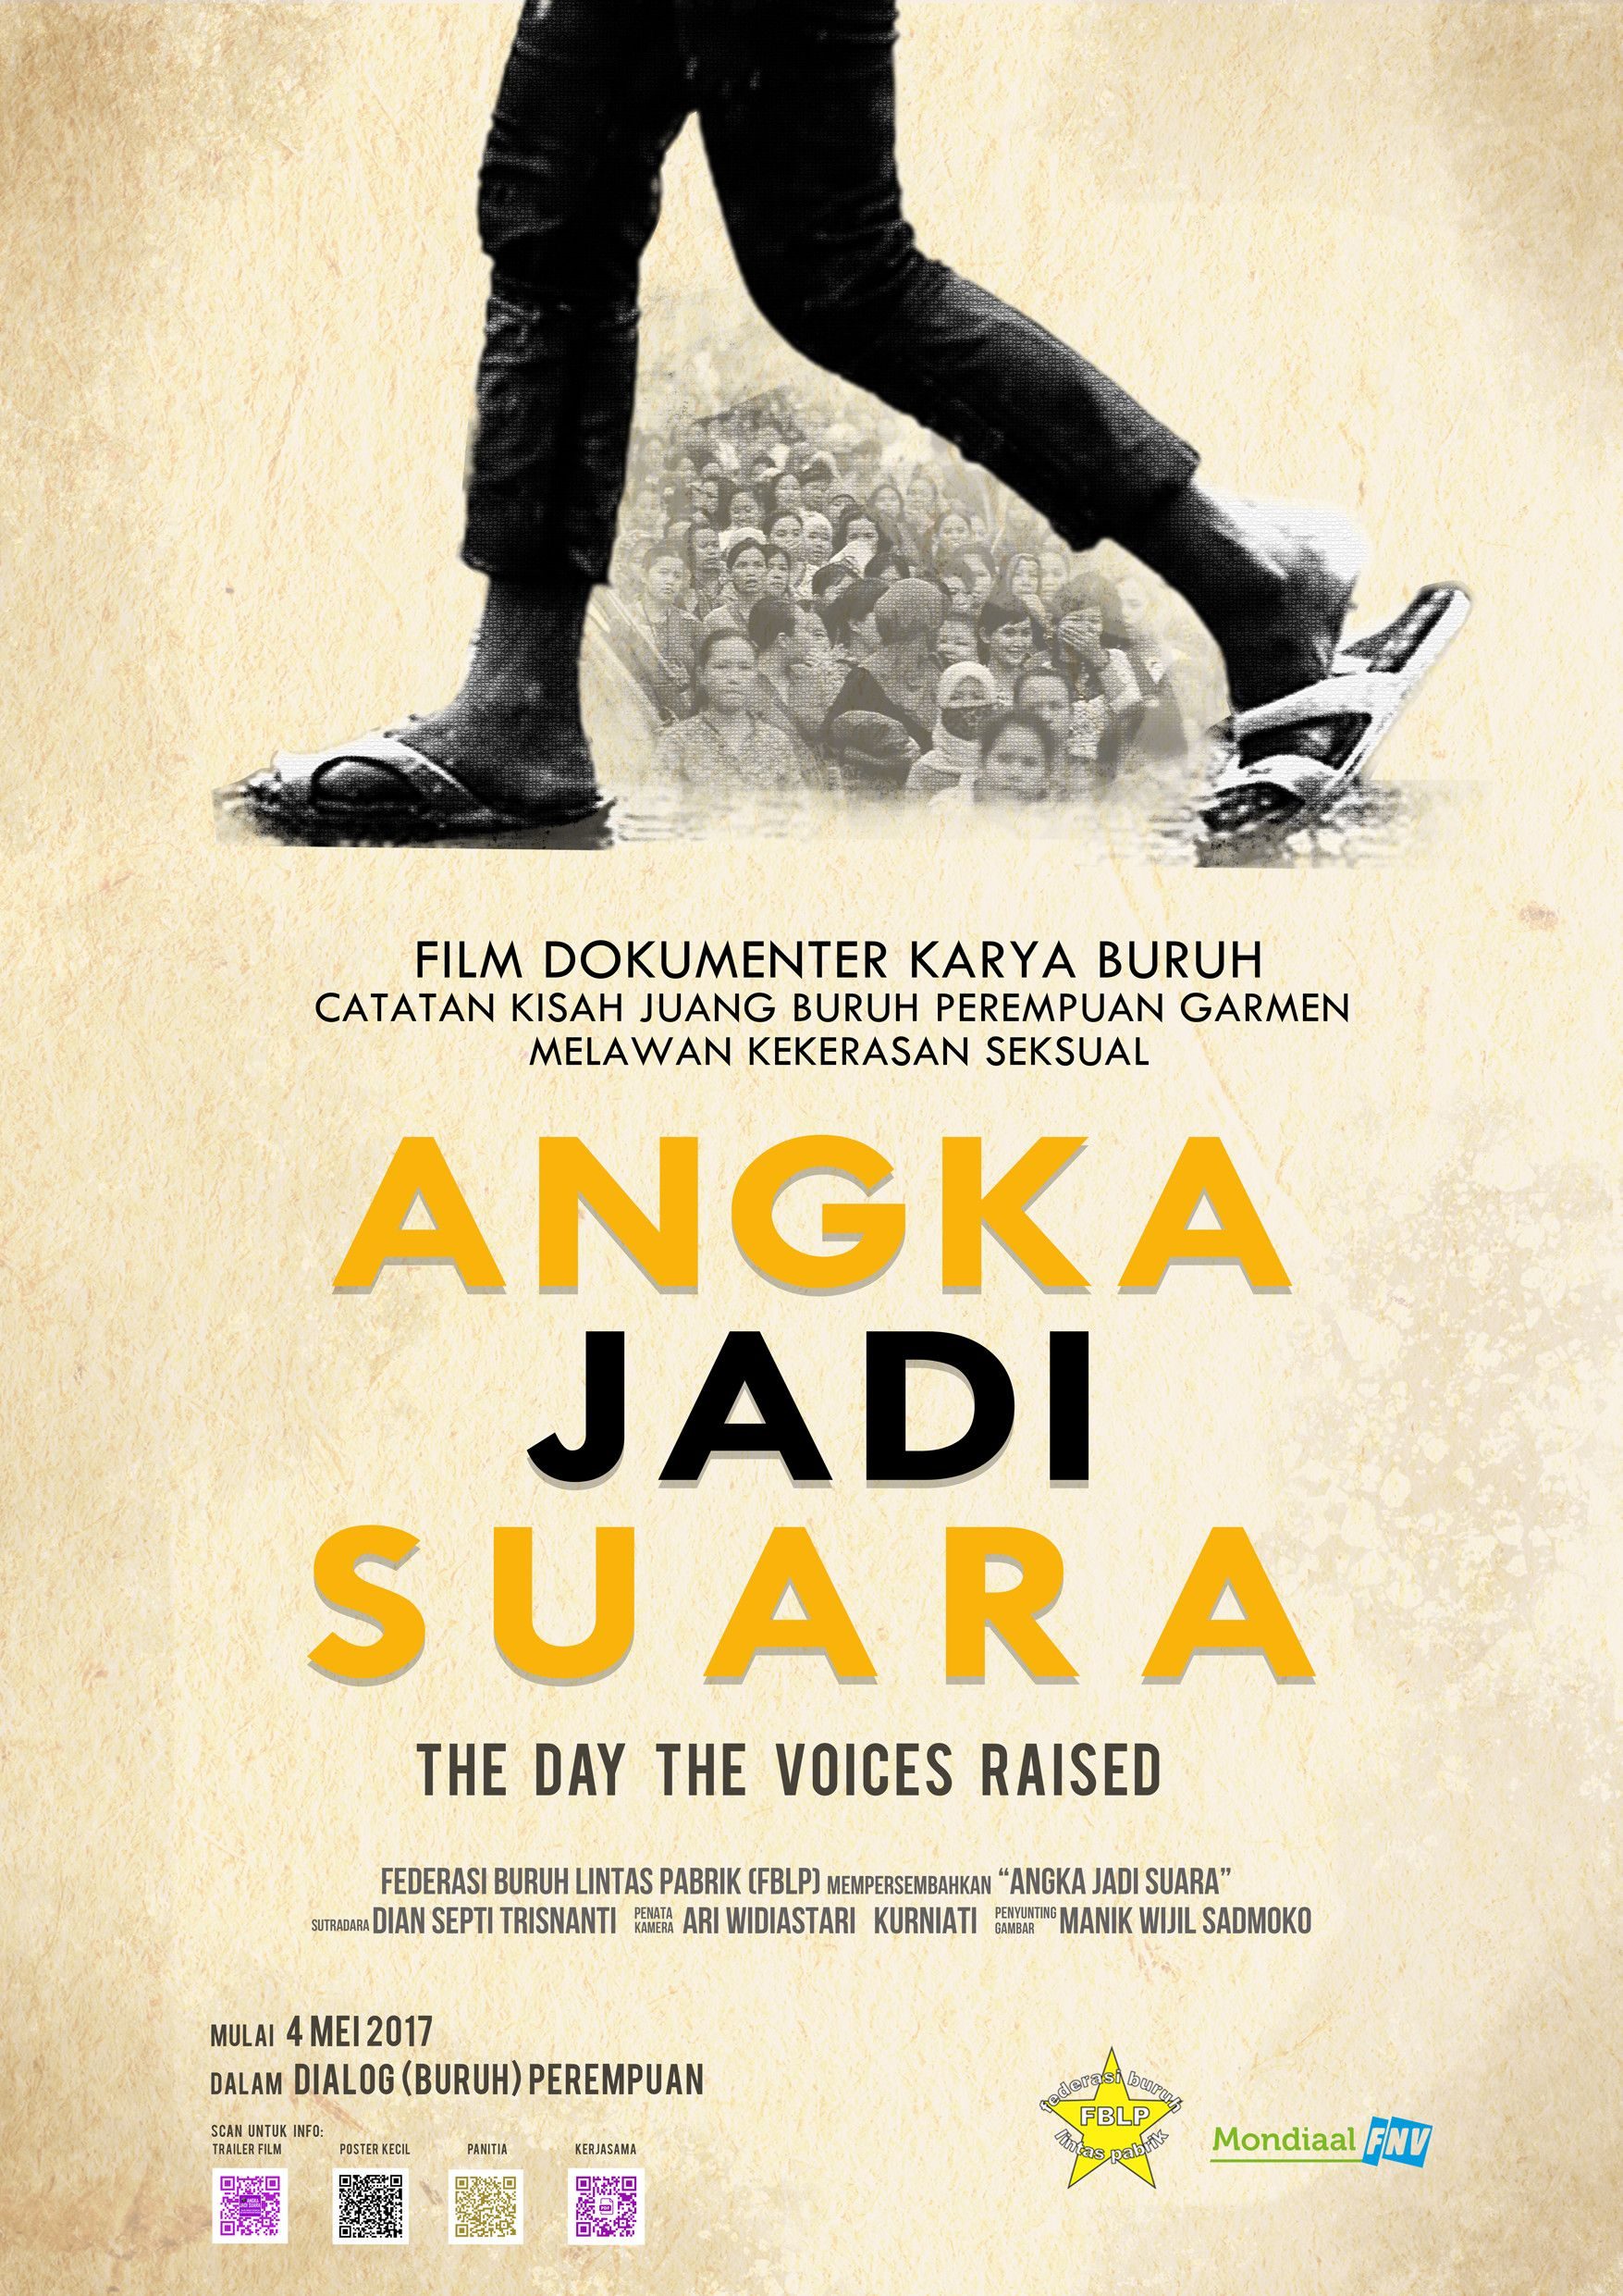 FILM DOKUMENTER. Poster film dokumenter berjudul "Angka Jadi Suara". Foto oleh FBLP  